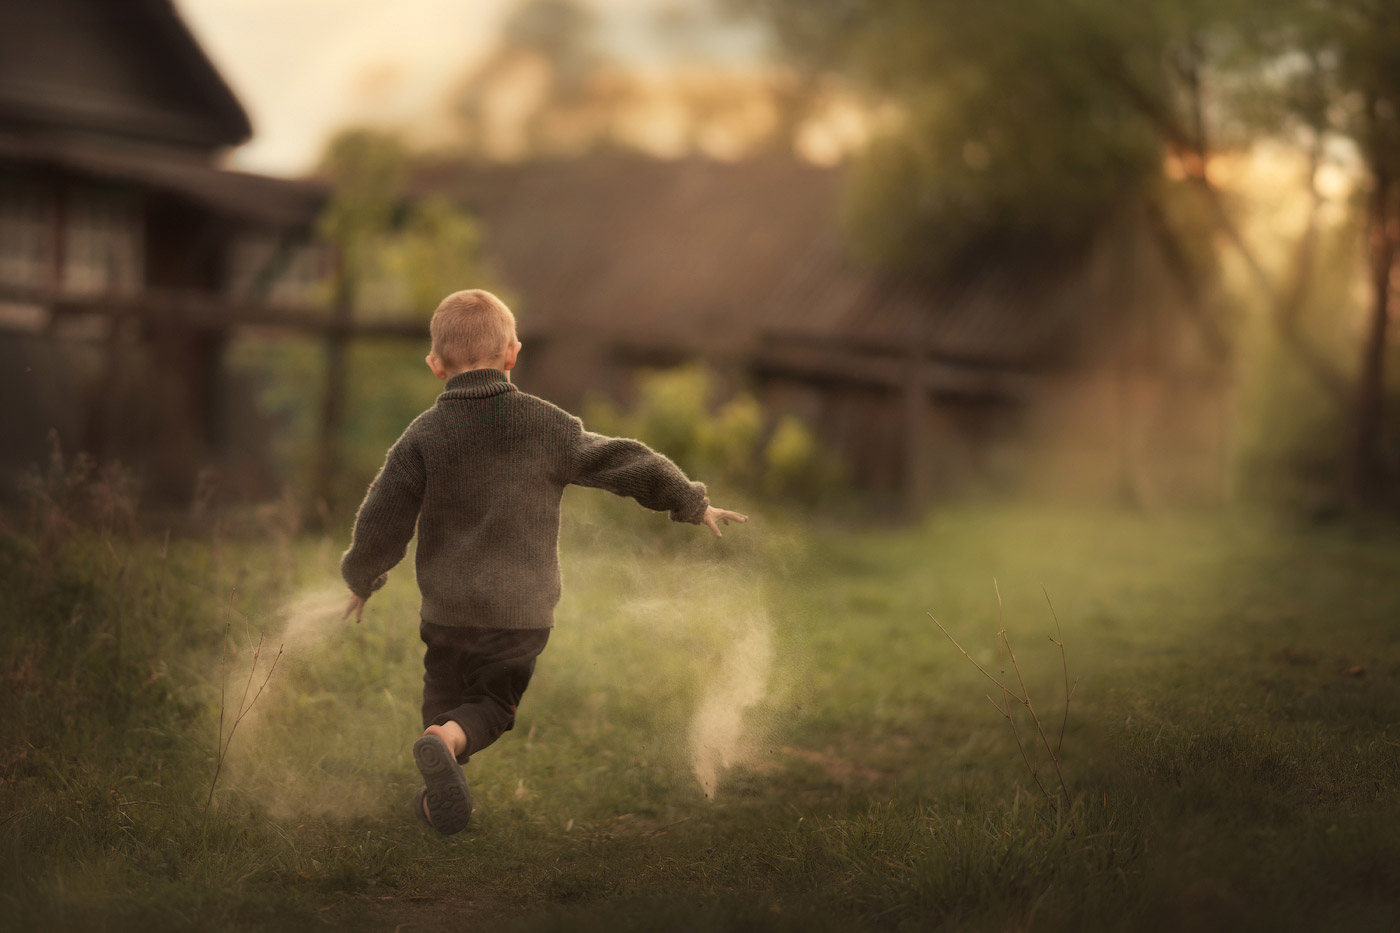 Мальчик бежит по траве